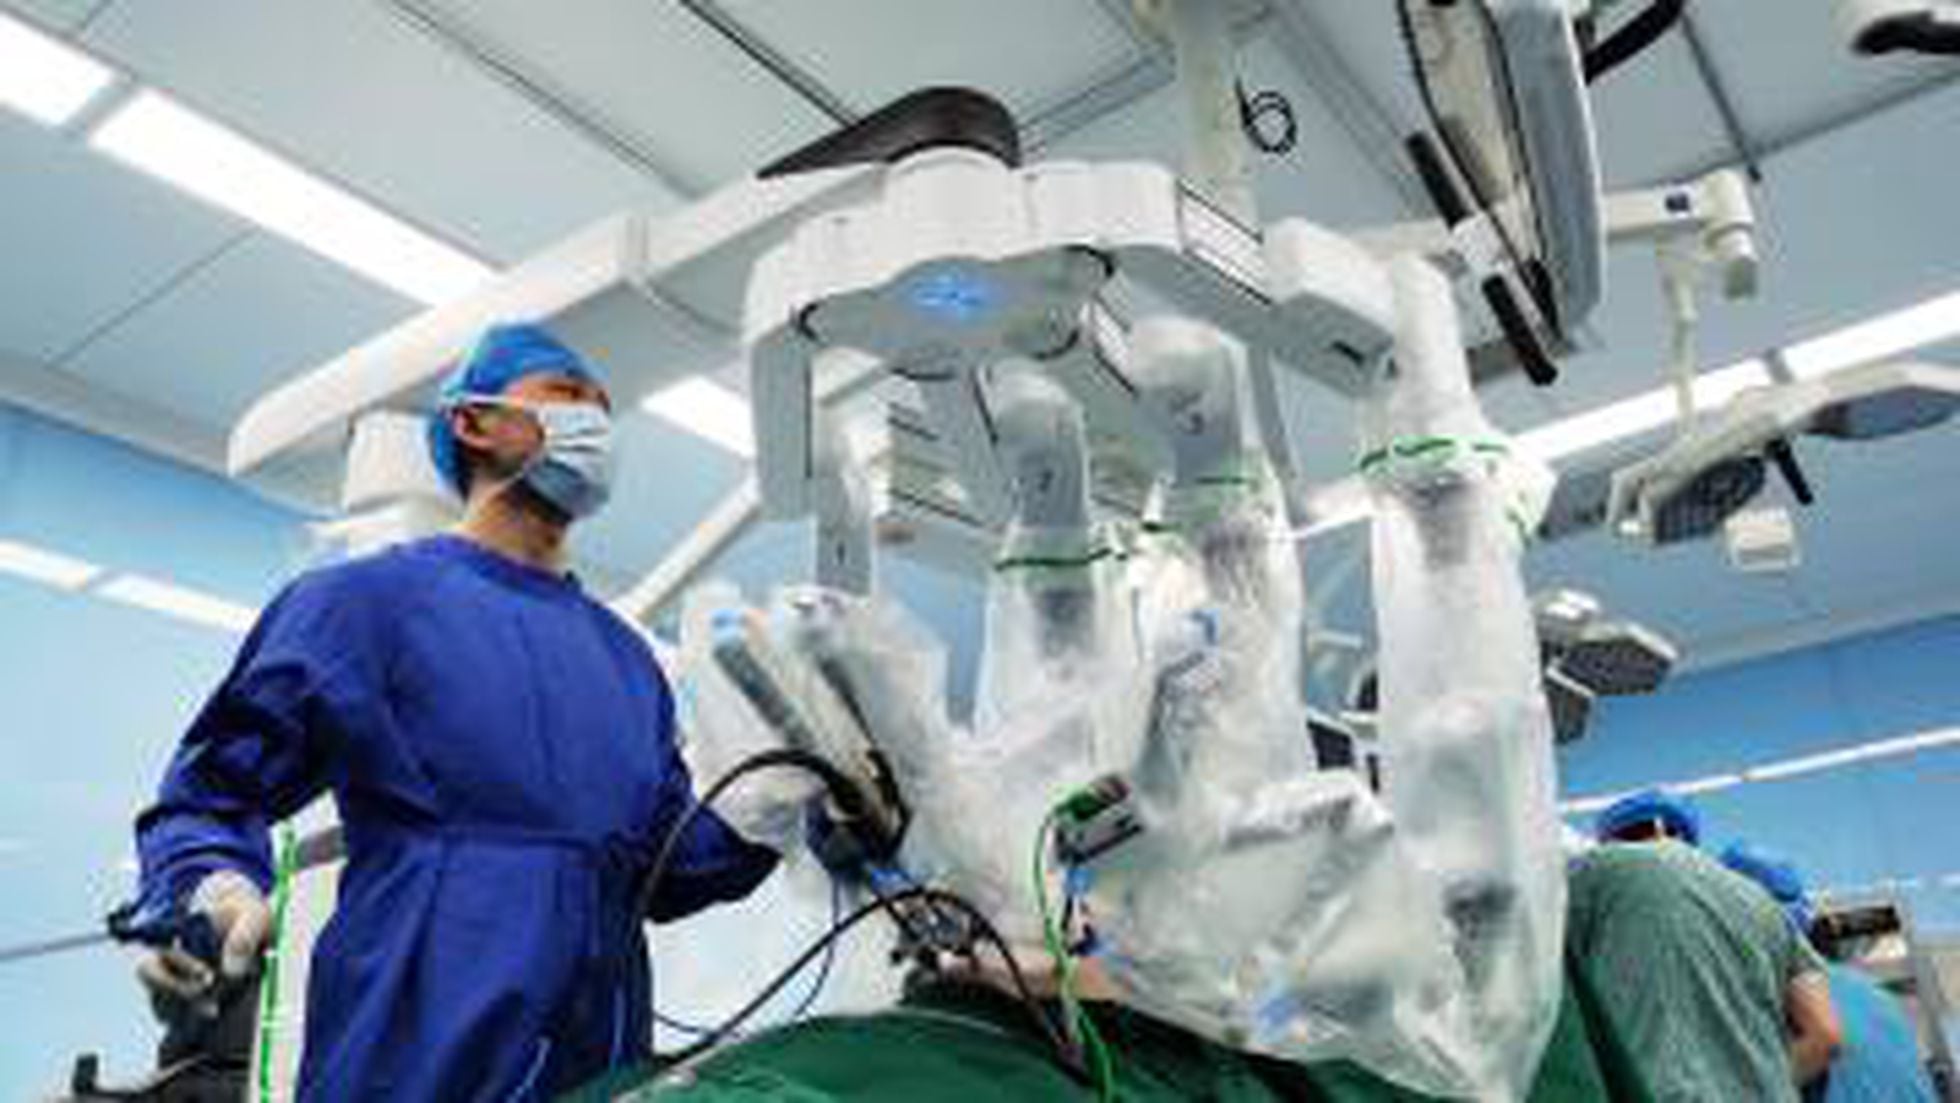 Cómo la robótica y la inteligencia artificial pueden mejorar la cirugía y frenar enfermedades | Empresas | Cinco Días